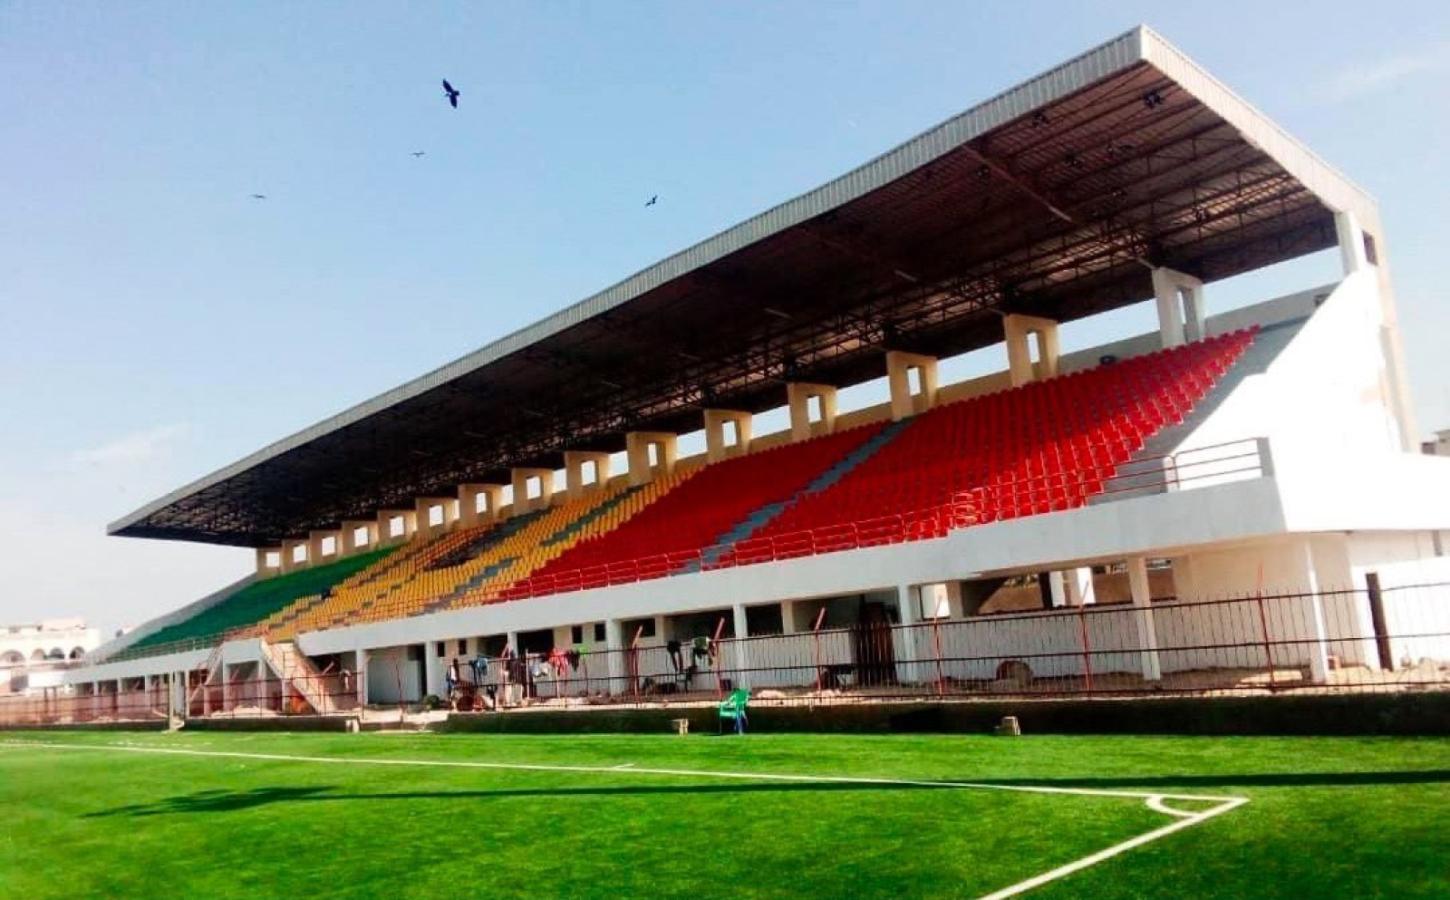 Imagen La espectacular tribuna del estadio construido gracias al aporte de Mané.